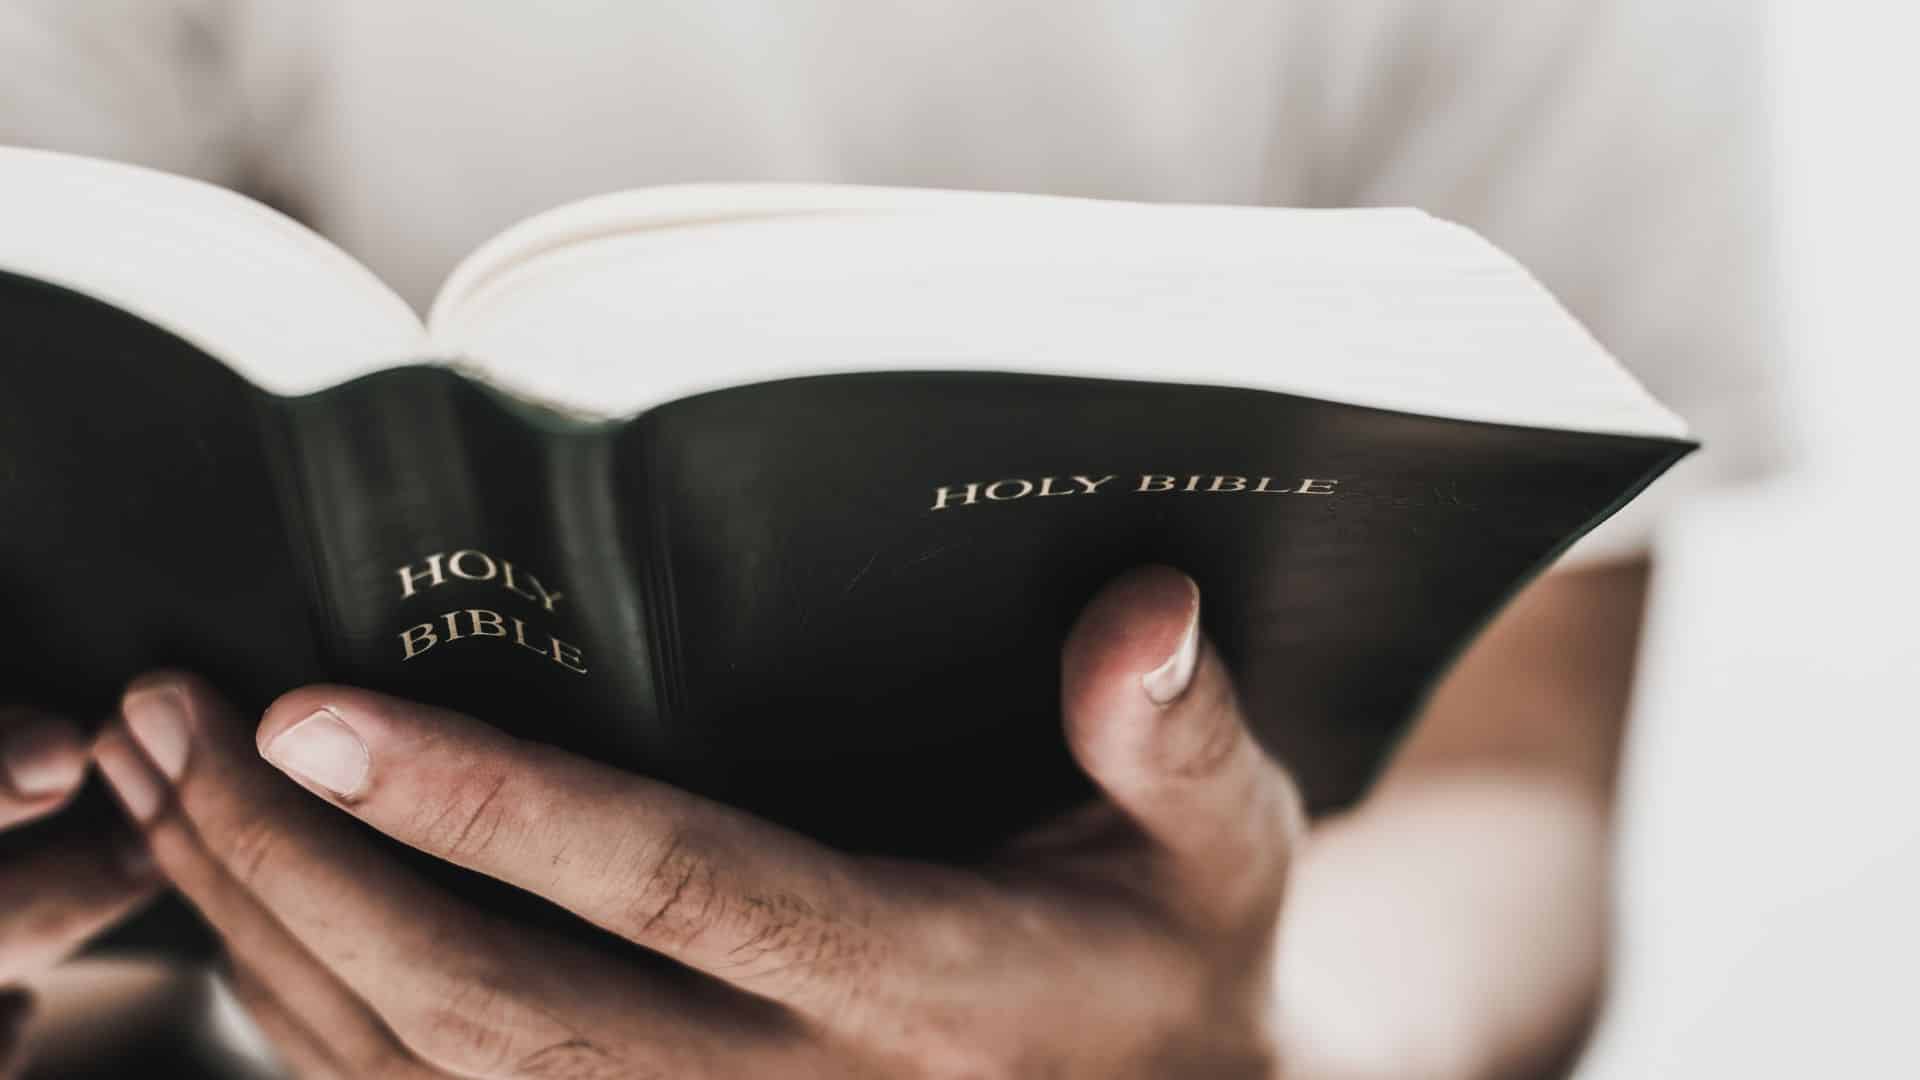 Bible in hands